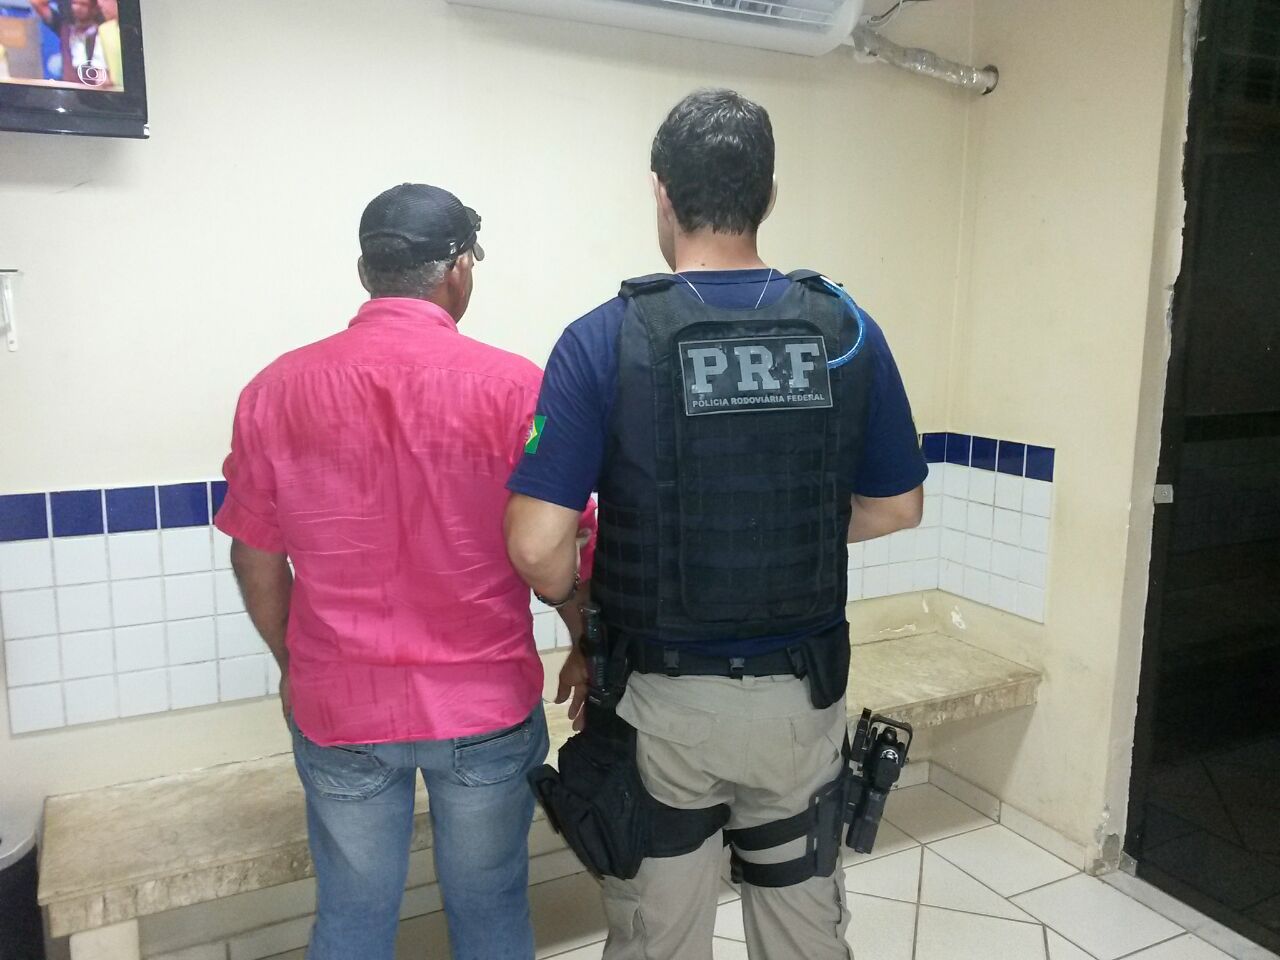 ITAPUÃ DO OESTE: PRF prende homem com habilitação falsa no Km-600 da BR-364